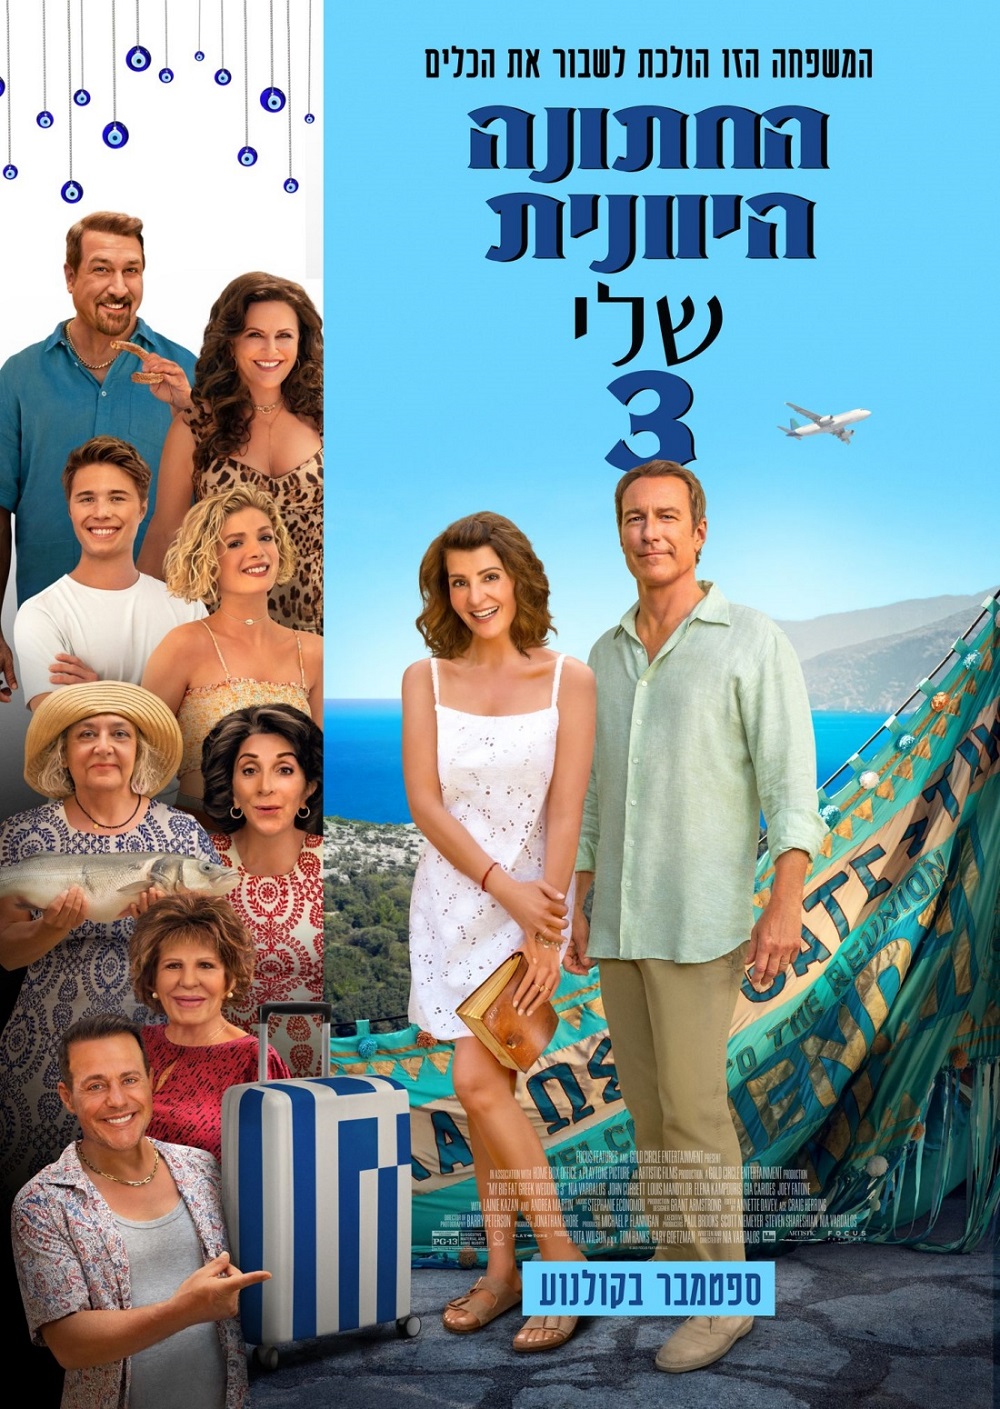 הקרנת הסרט "החתונה היוונית שלי 3"  בלבד בבית הקולנוע של HOT CINEMA!